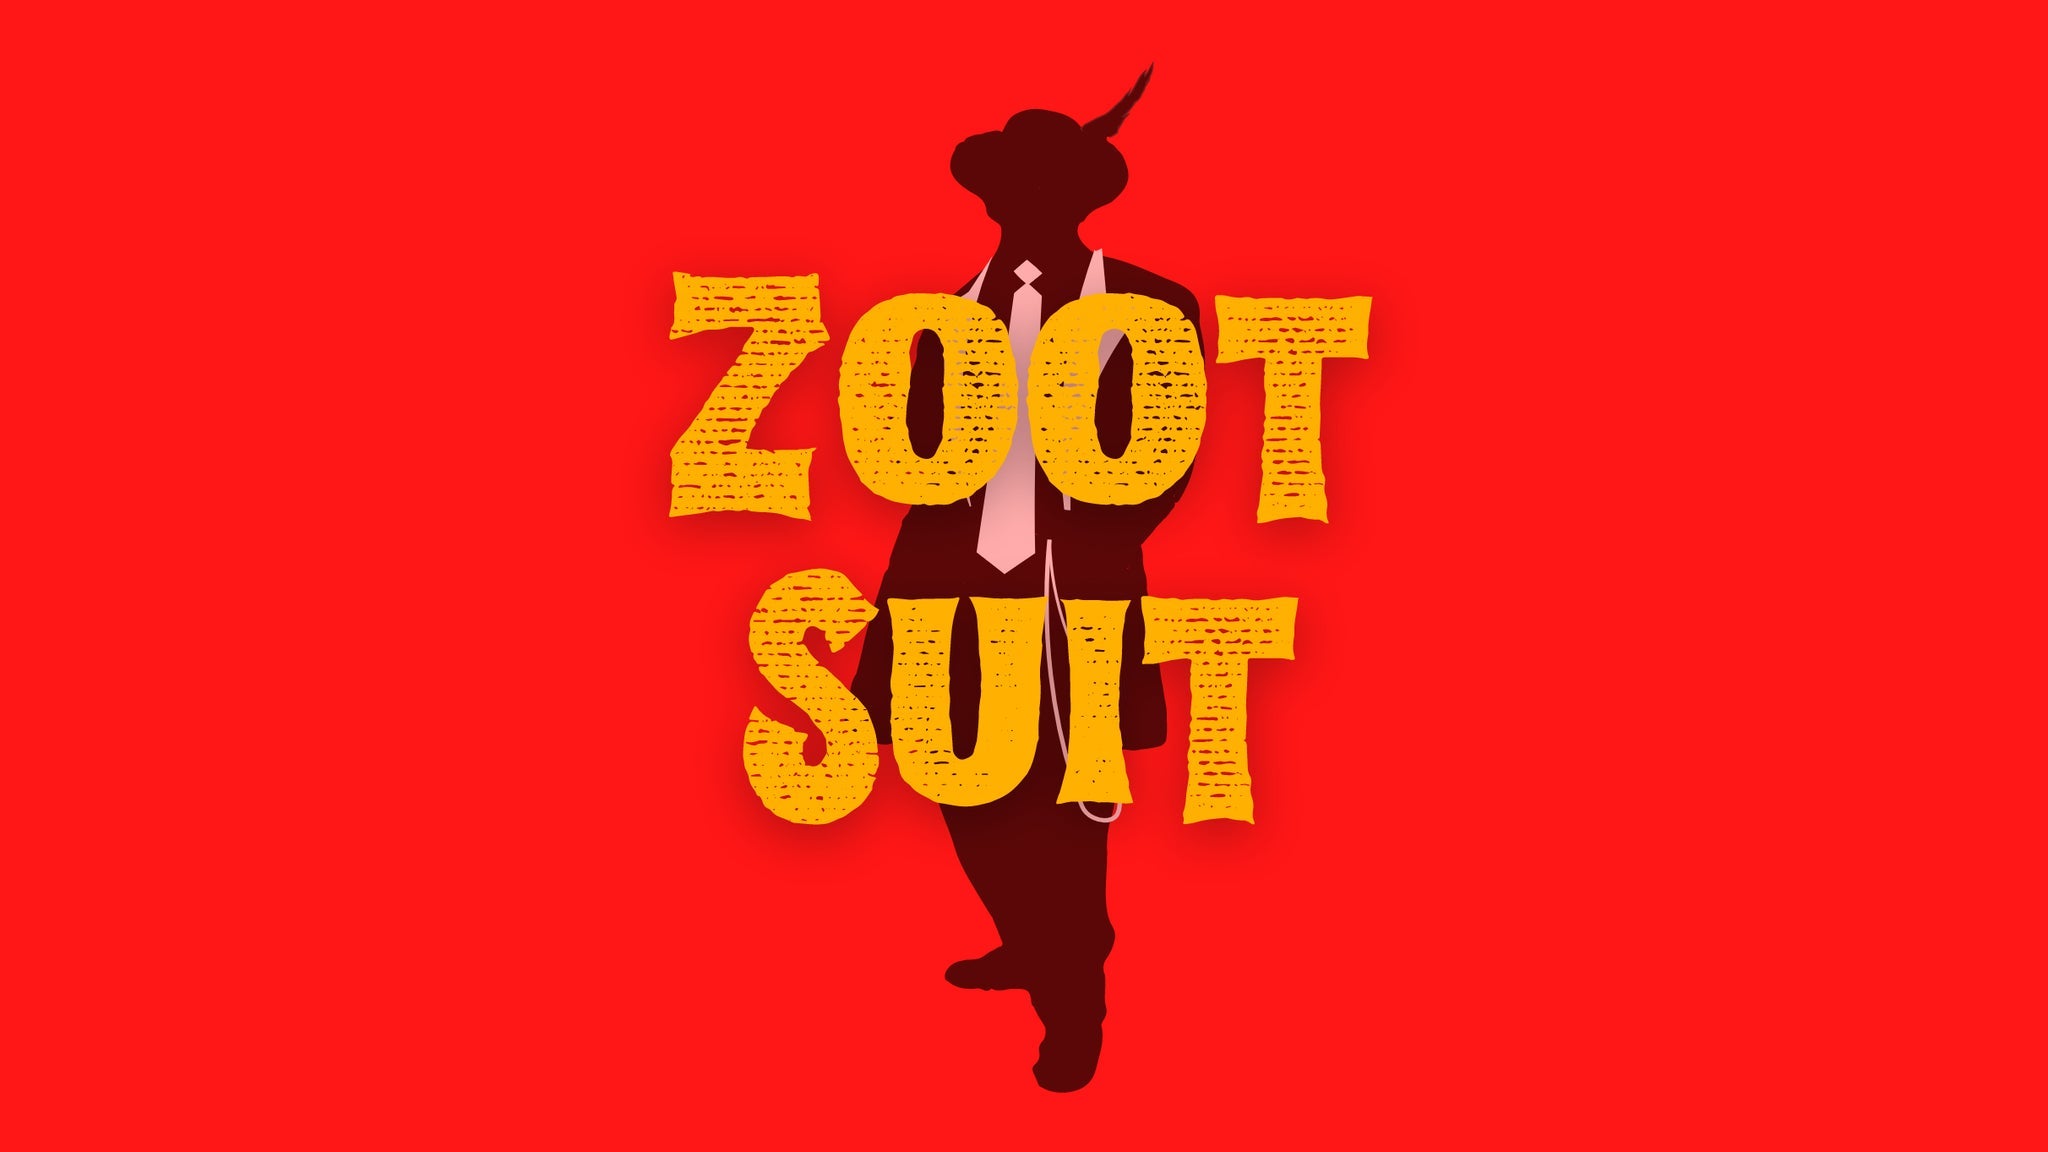 Zoot Suit presale information on freepresalepasswords.com